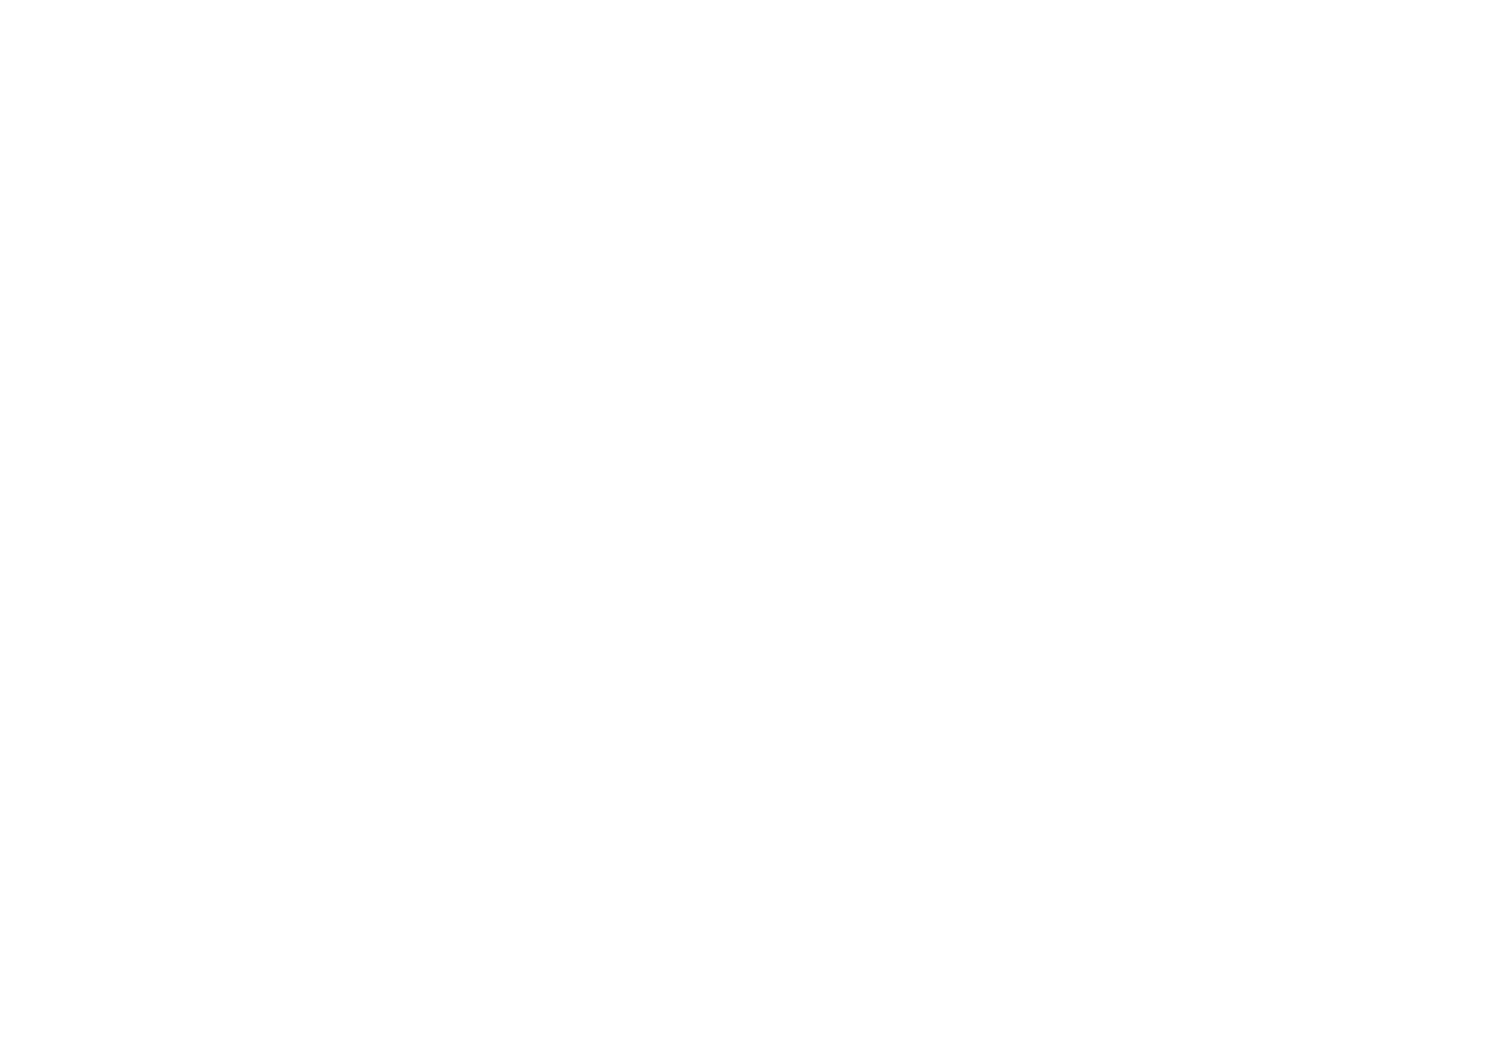 piroland